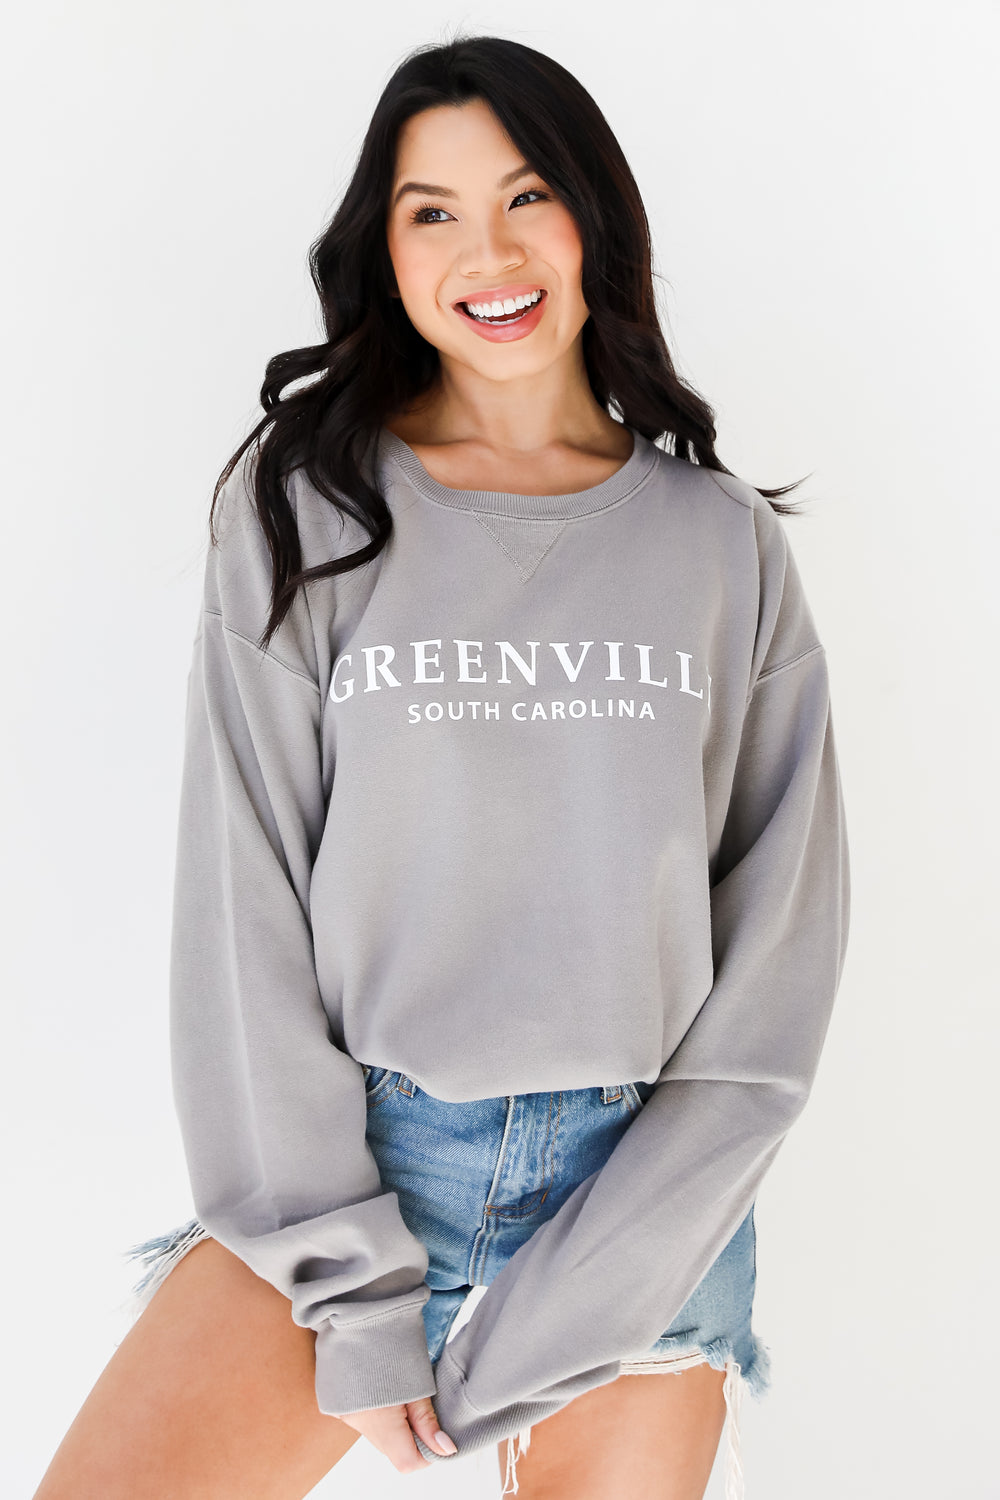 Grey Greenville South Carolina Pullover on model